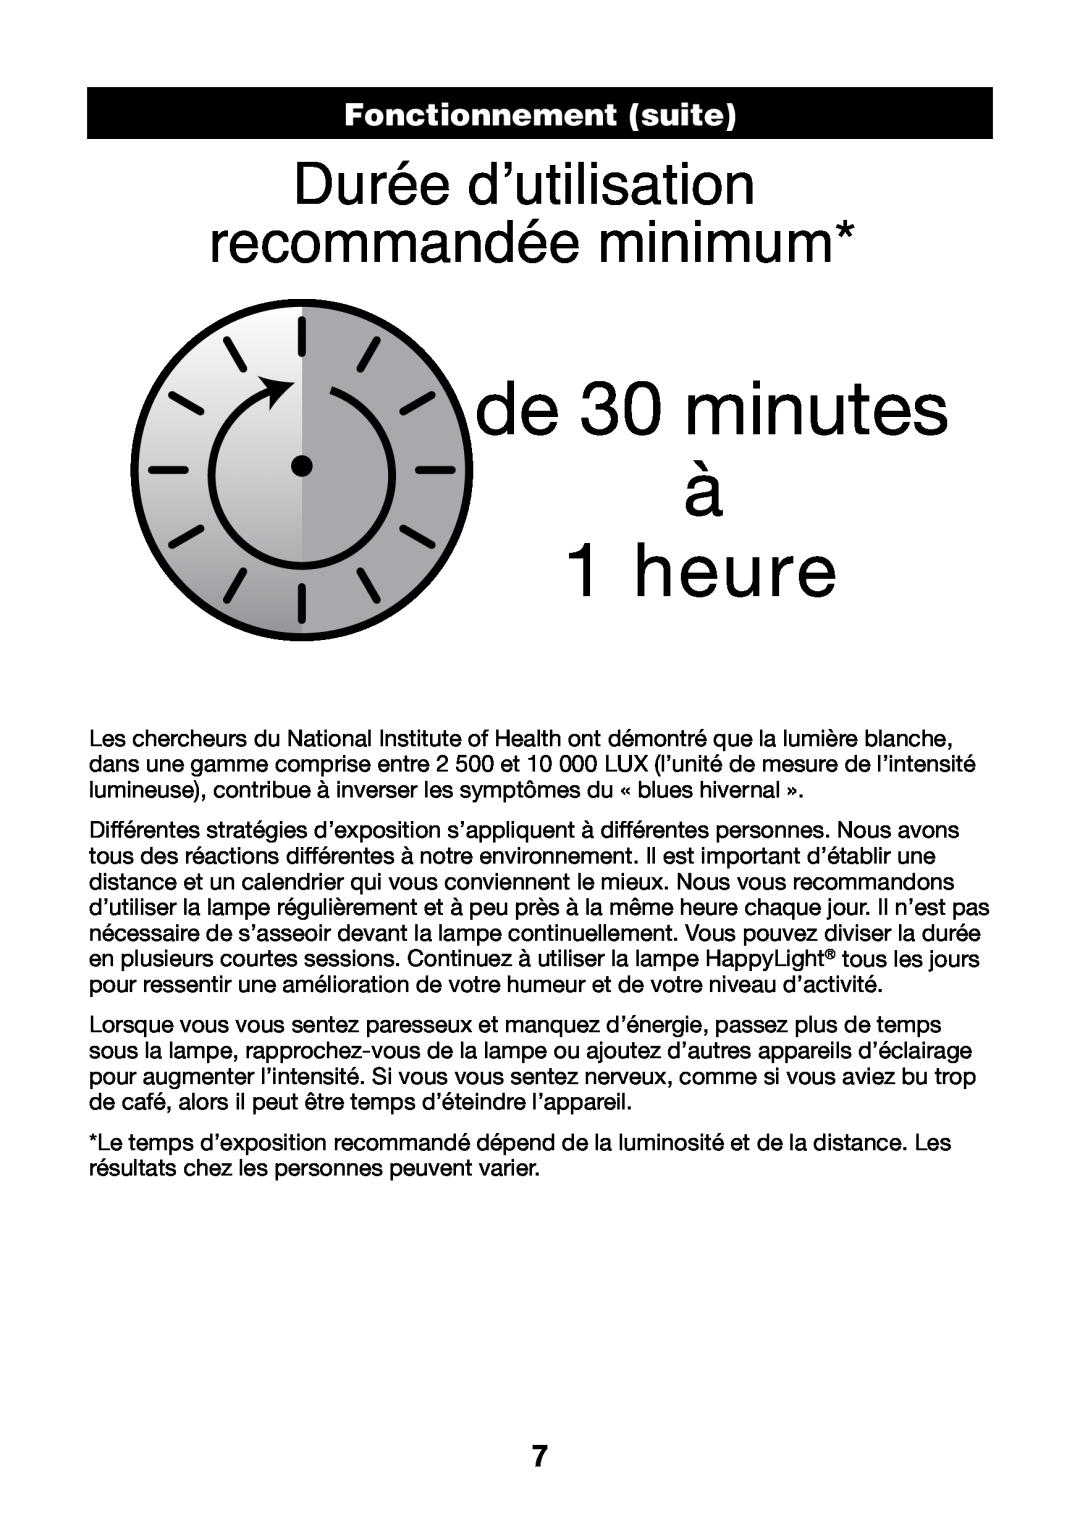 Verilux HPLD manual FonctionnementHEADER suite, de 30 minutes à 1 heure, Durée d’utilisation recommandée minimum 